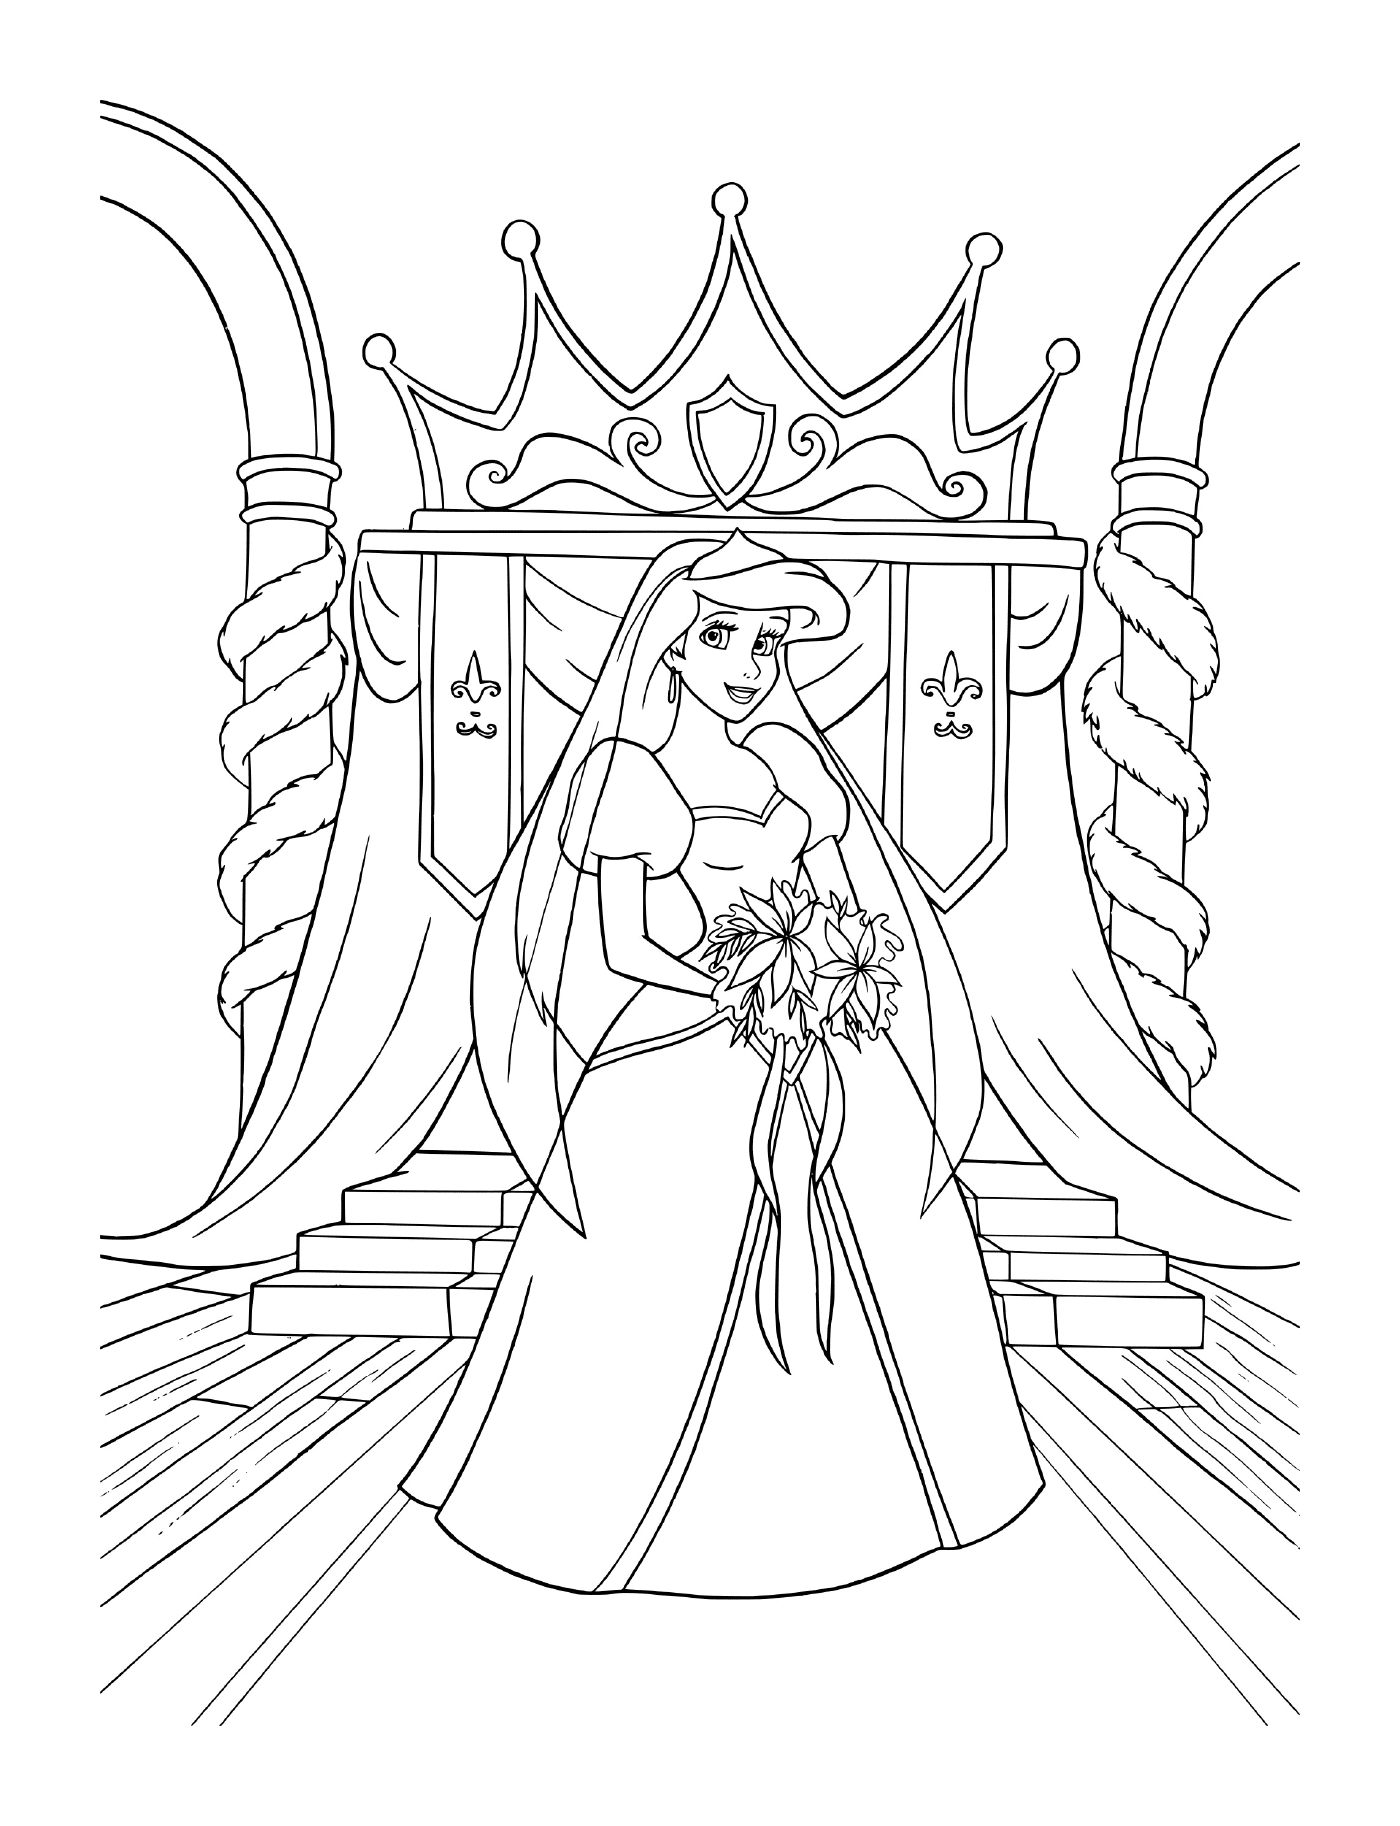   Une mariée en robe de mariage assise sur un trône 